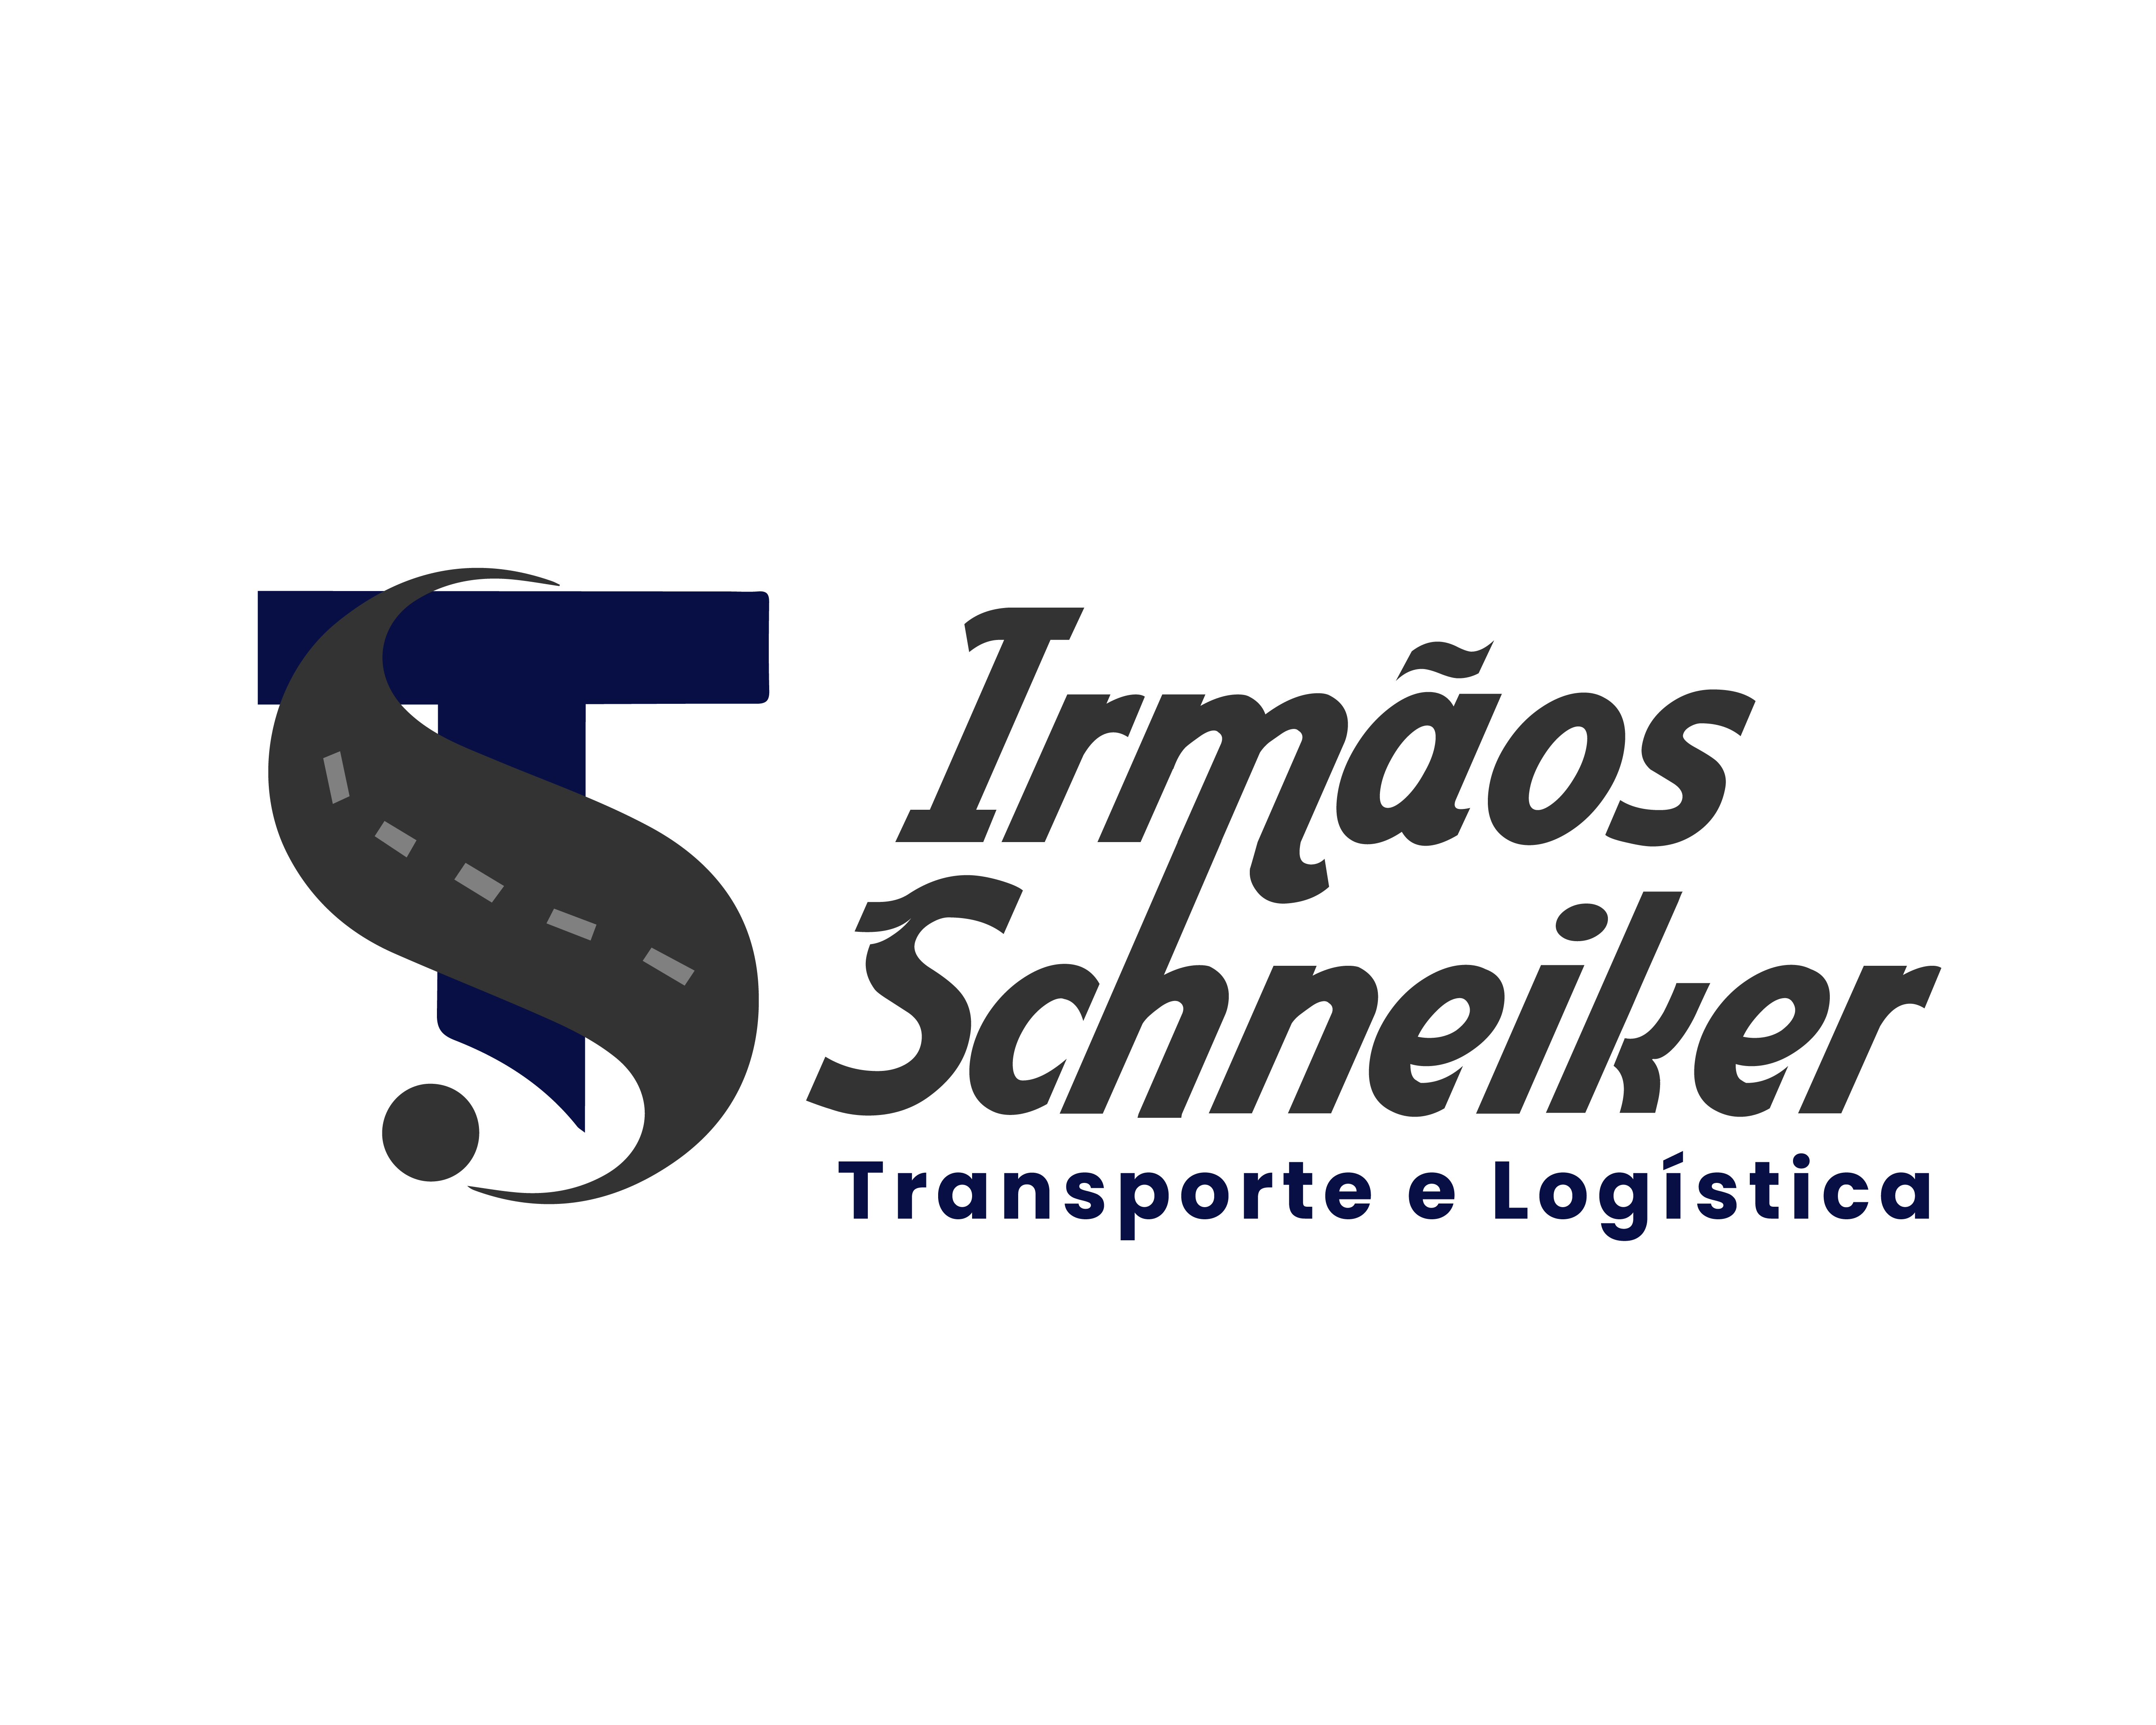 Transportadora Irmãos Schneiker Transportes e Logística Ltda.